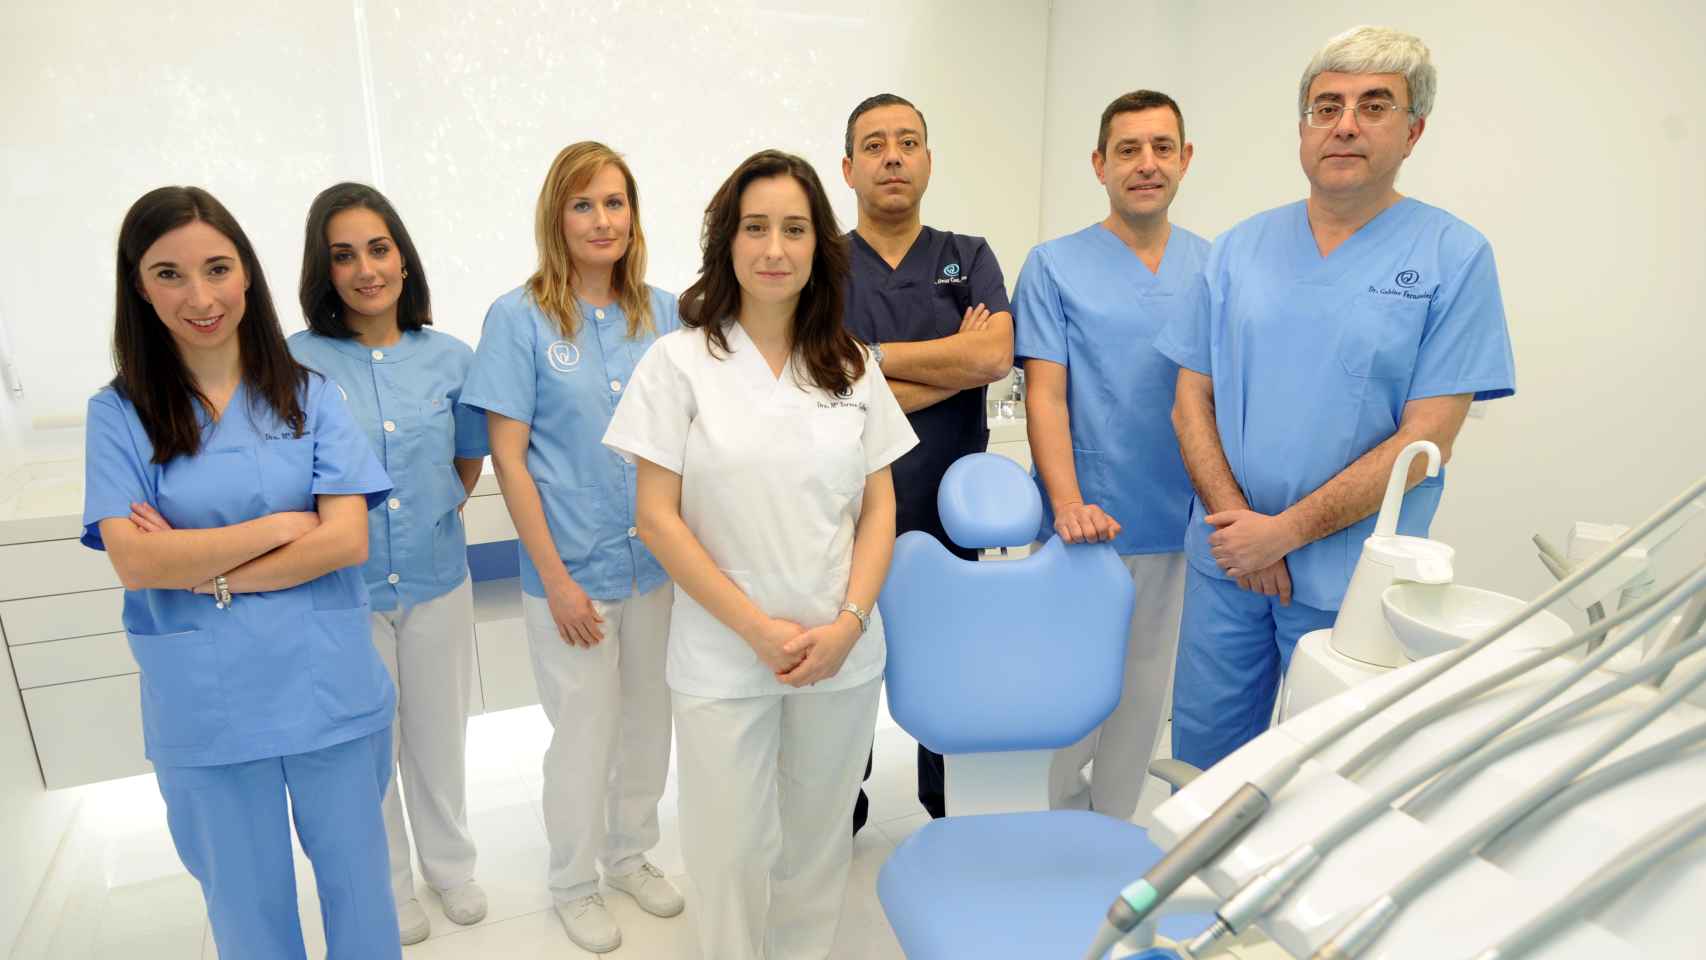 El personal de la clínica de Óscar, al fondo, de azul oscuro.